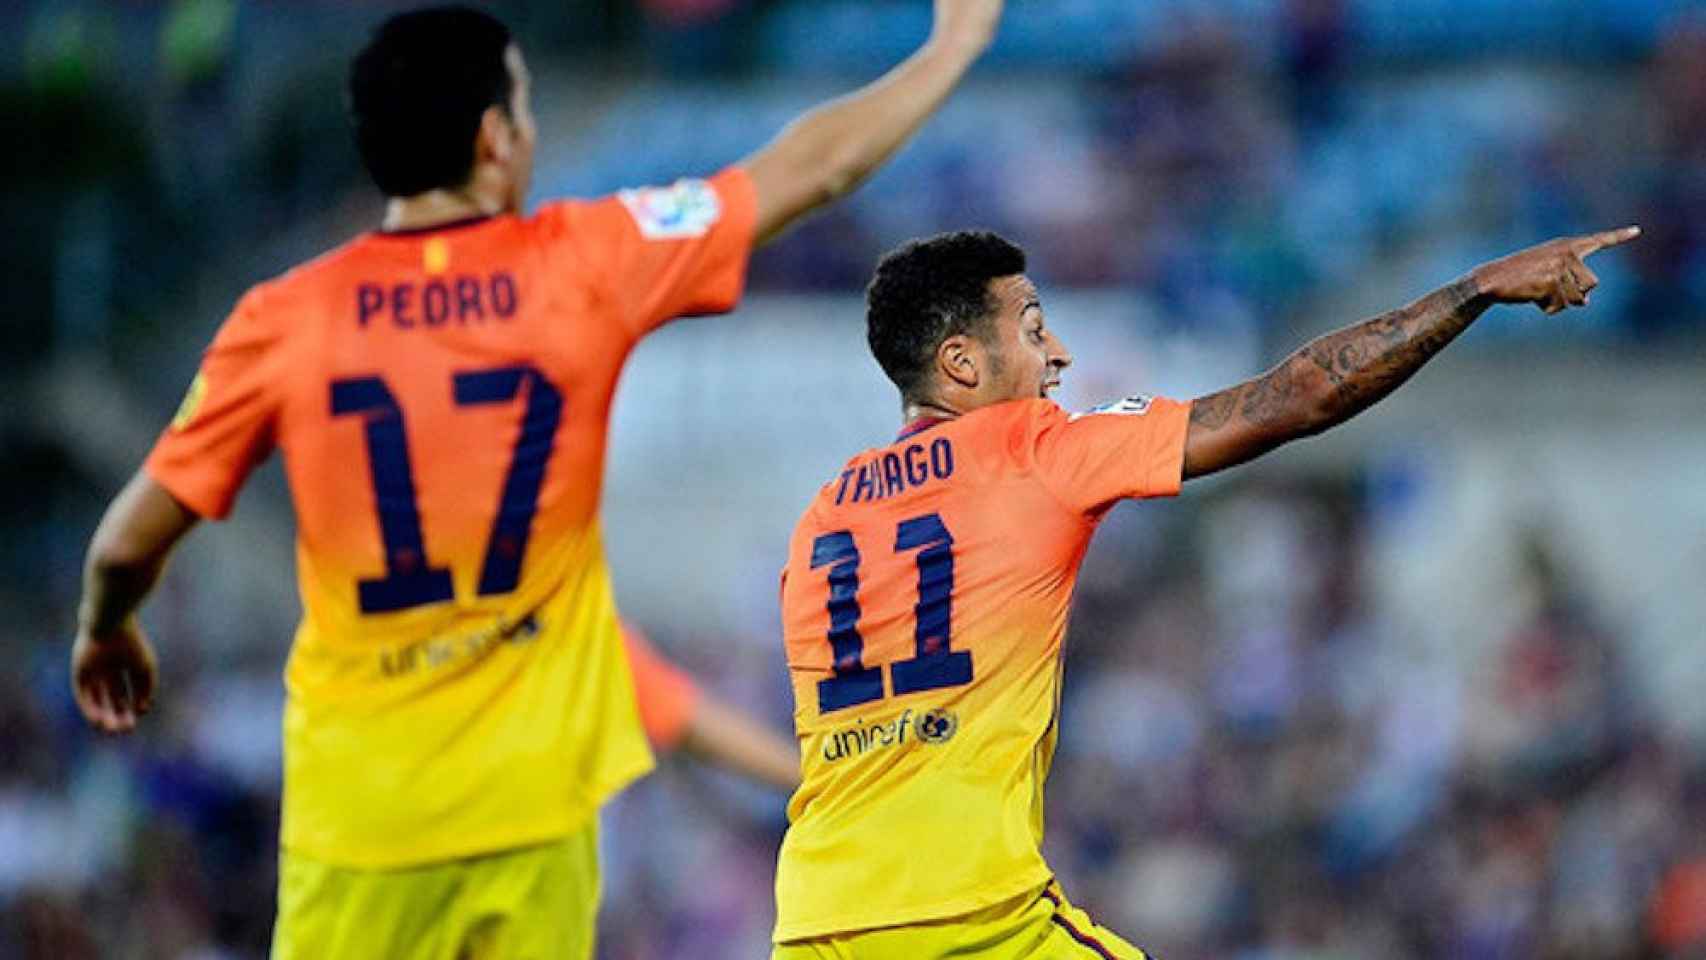 Una foto de Thiago Alcántara y Pedro durante un partido del Barça / Twitter